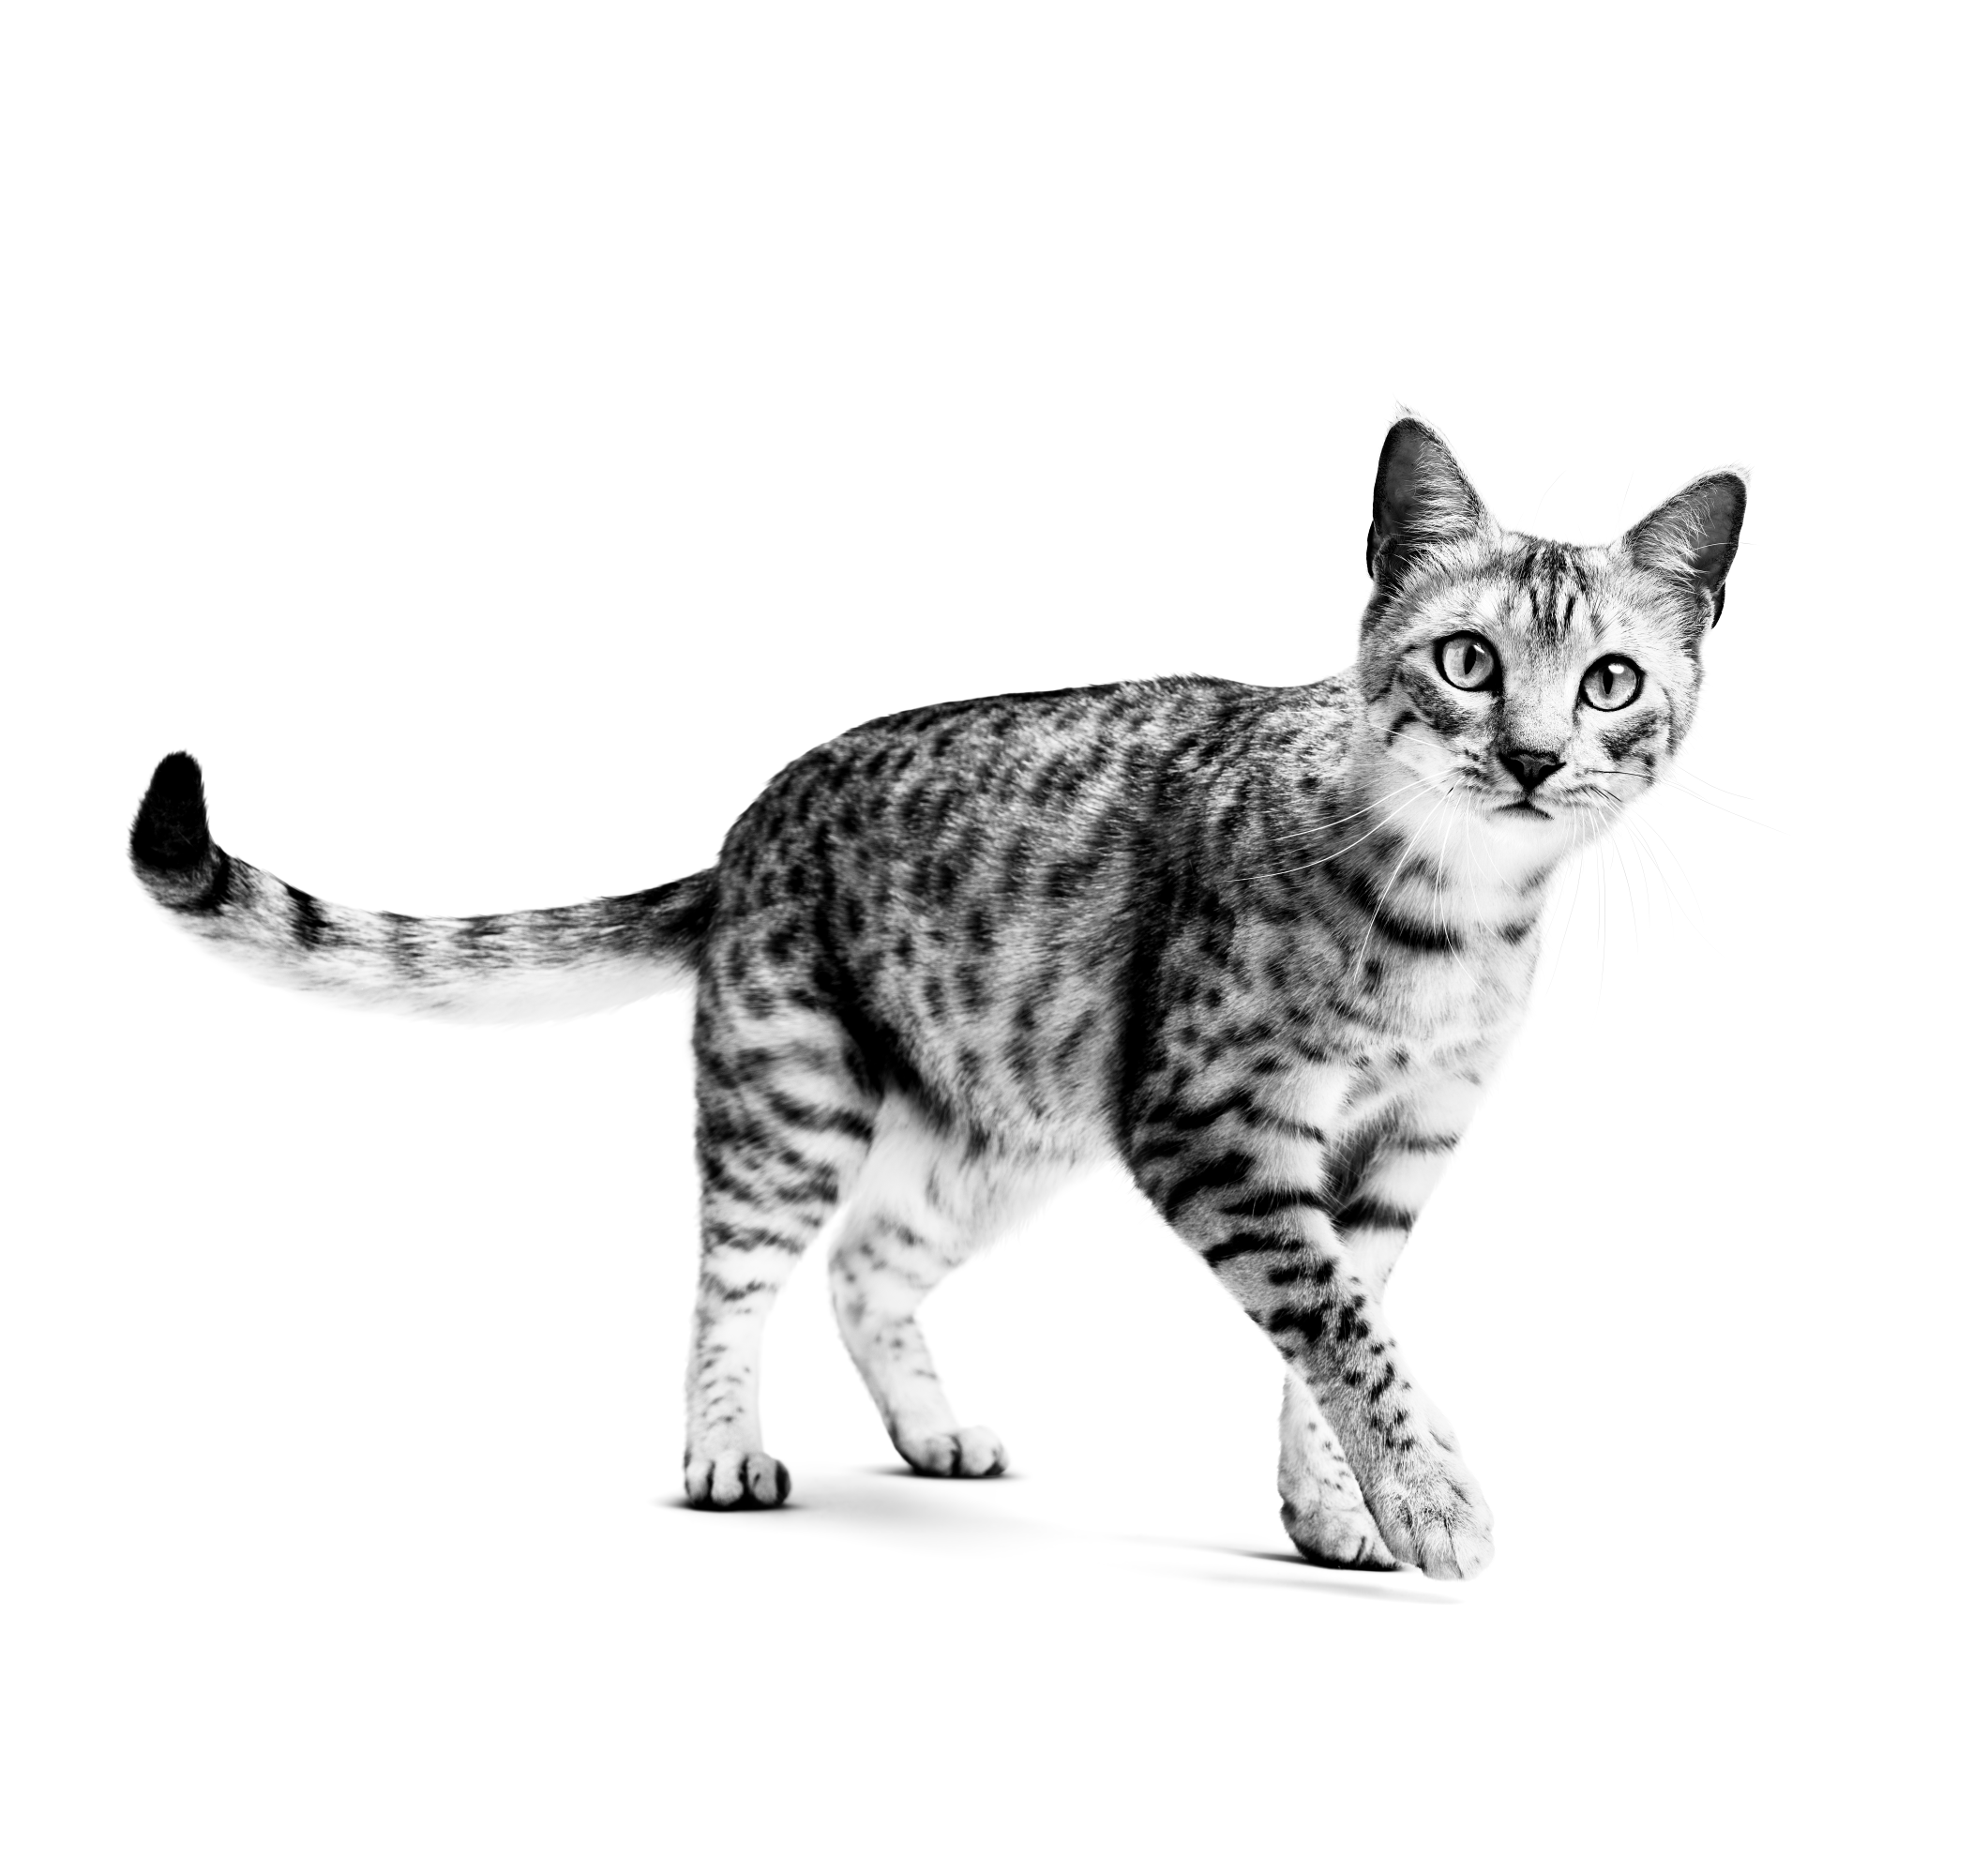 Дорослий кіт породи єгипетська мау, що стоїть, у відтінках сірого на білому тлі